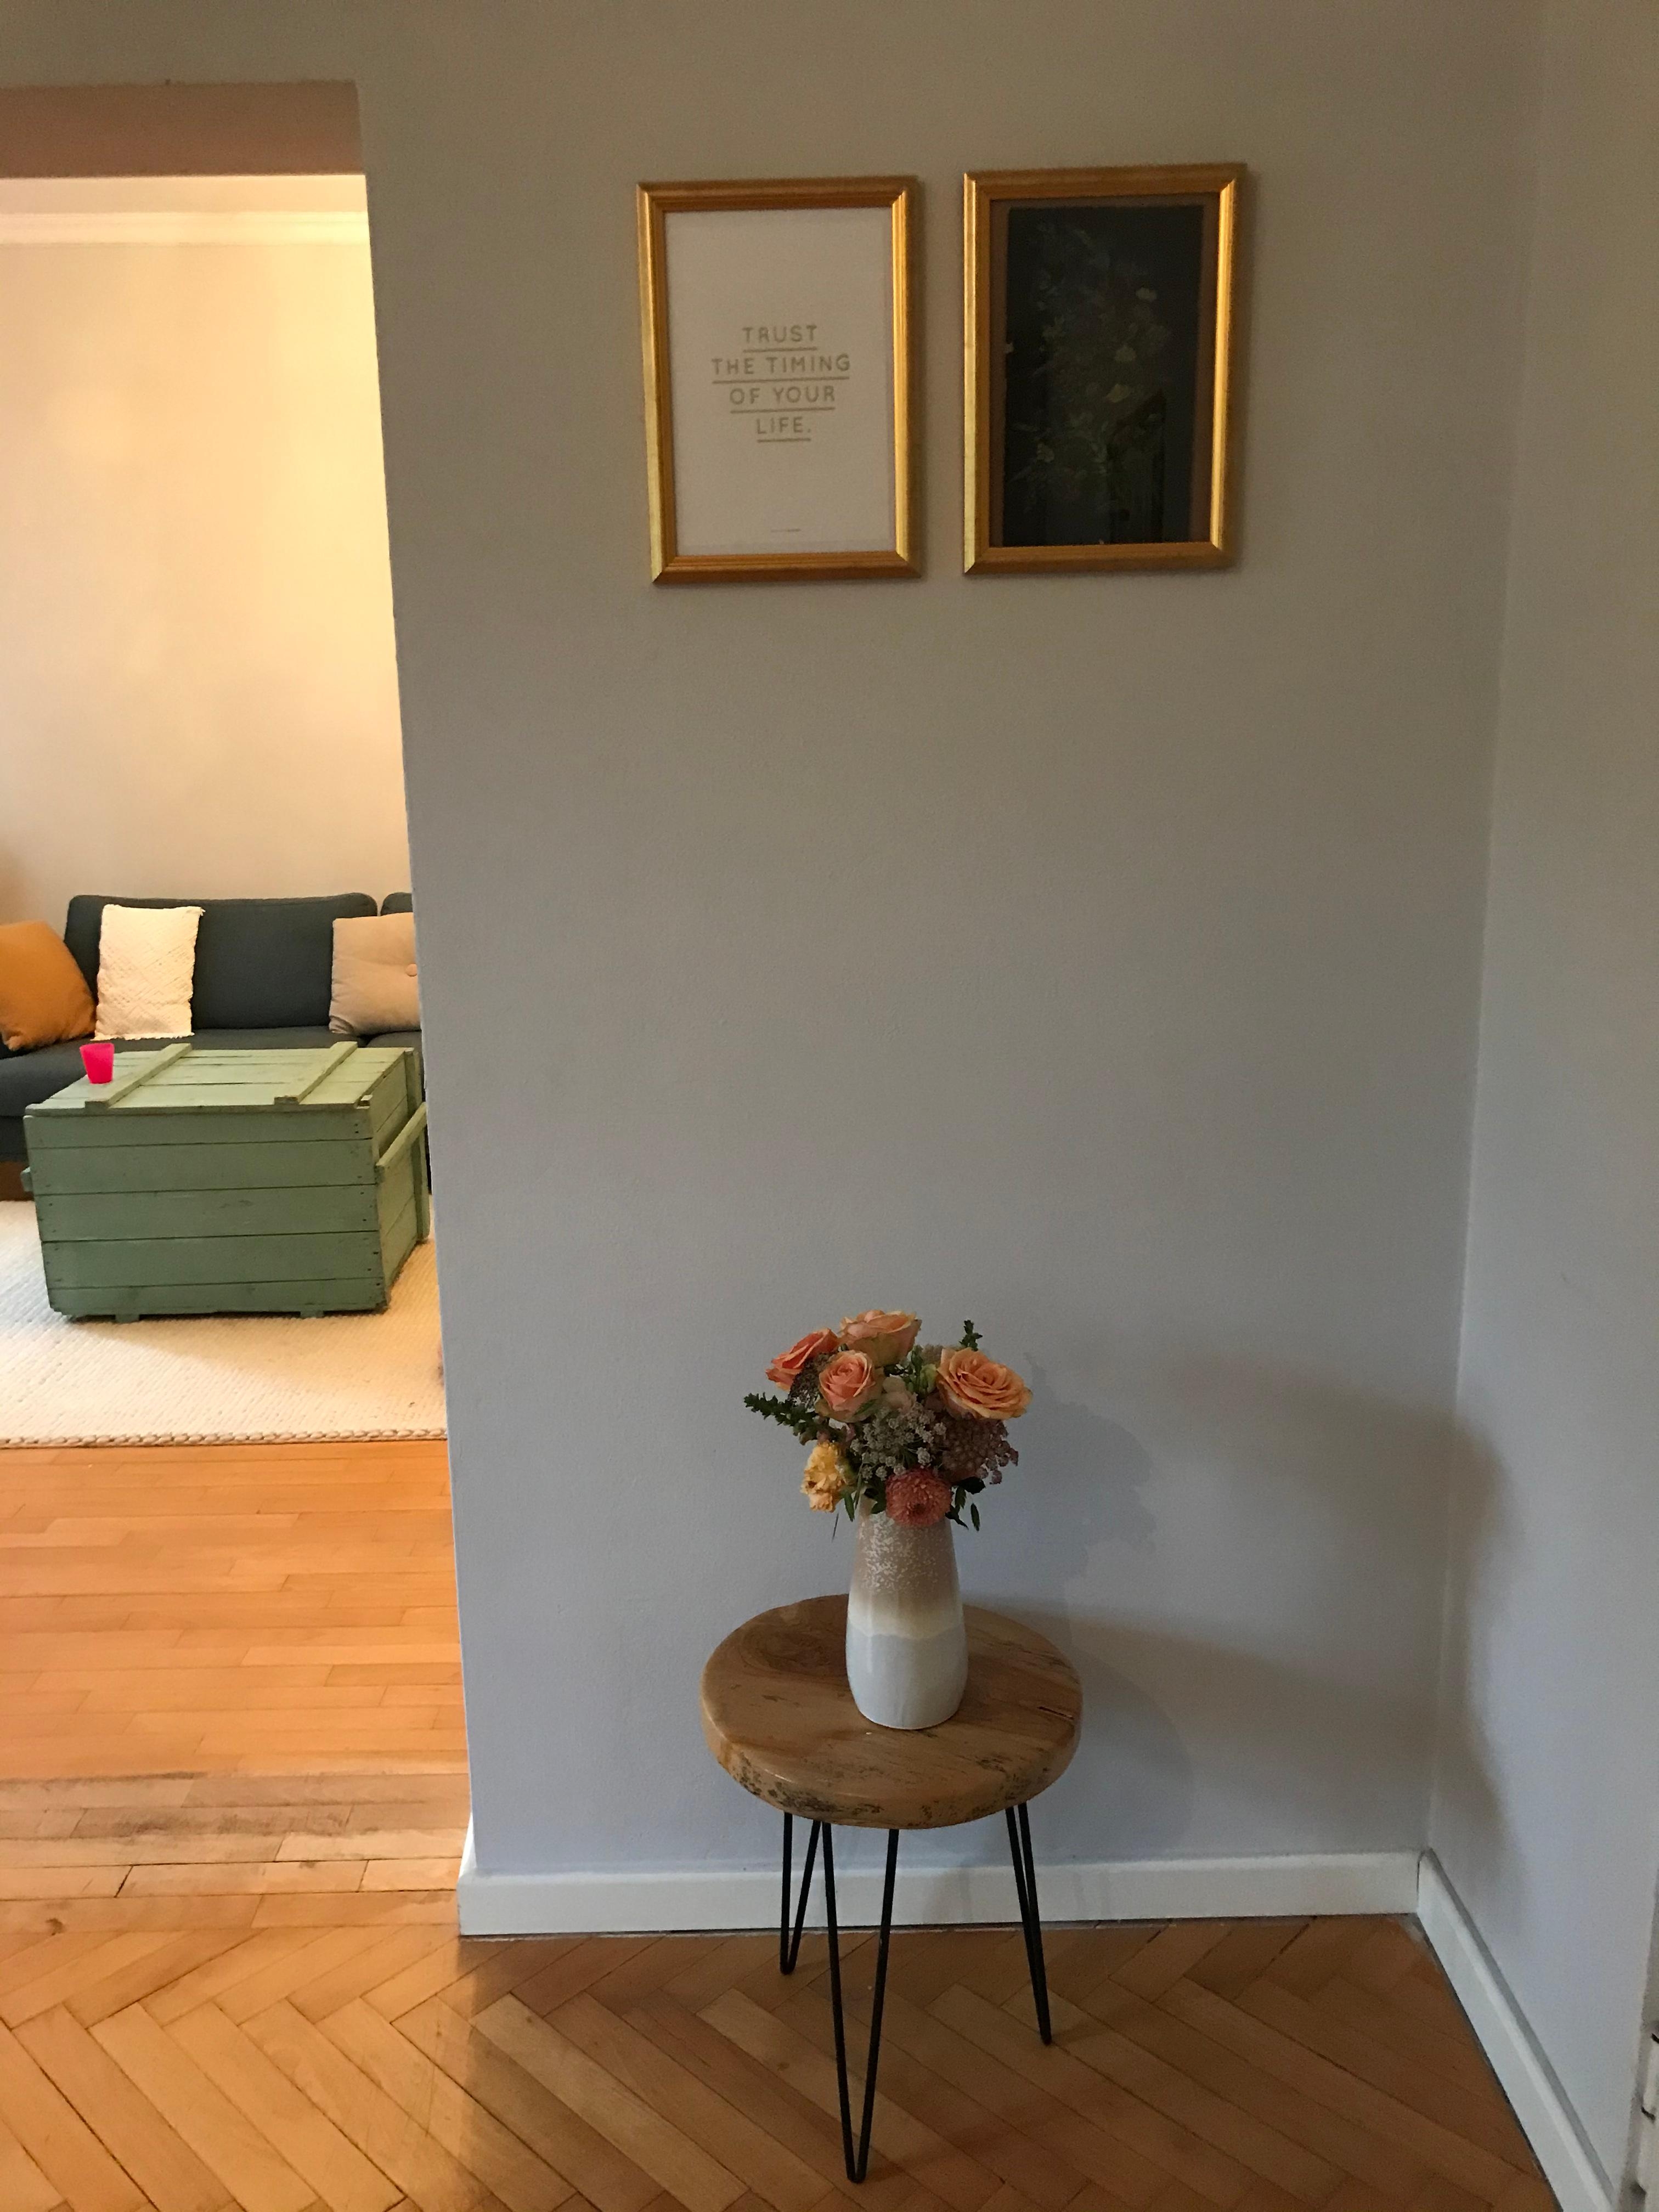 Platz für Farbe, oder? 
#livingroom #altbauliebe #couchstyle